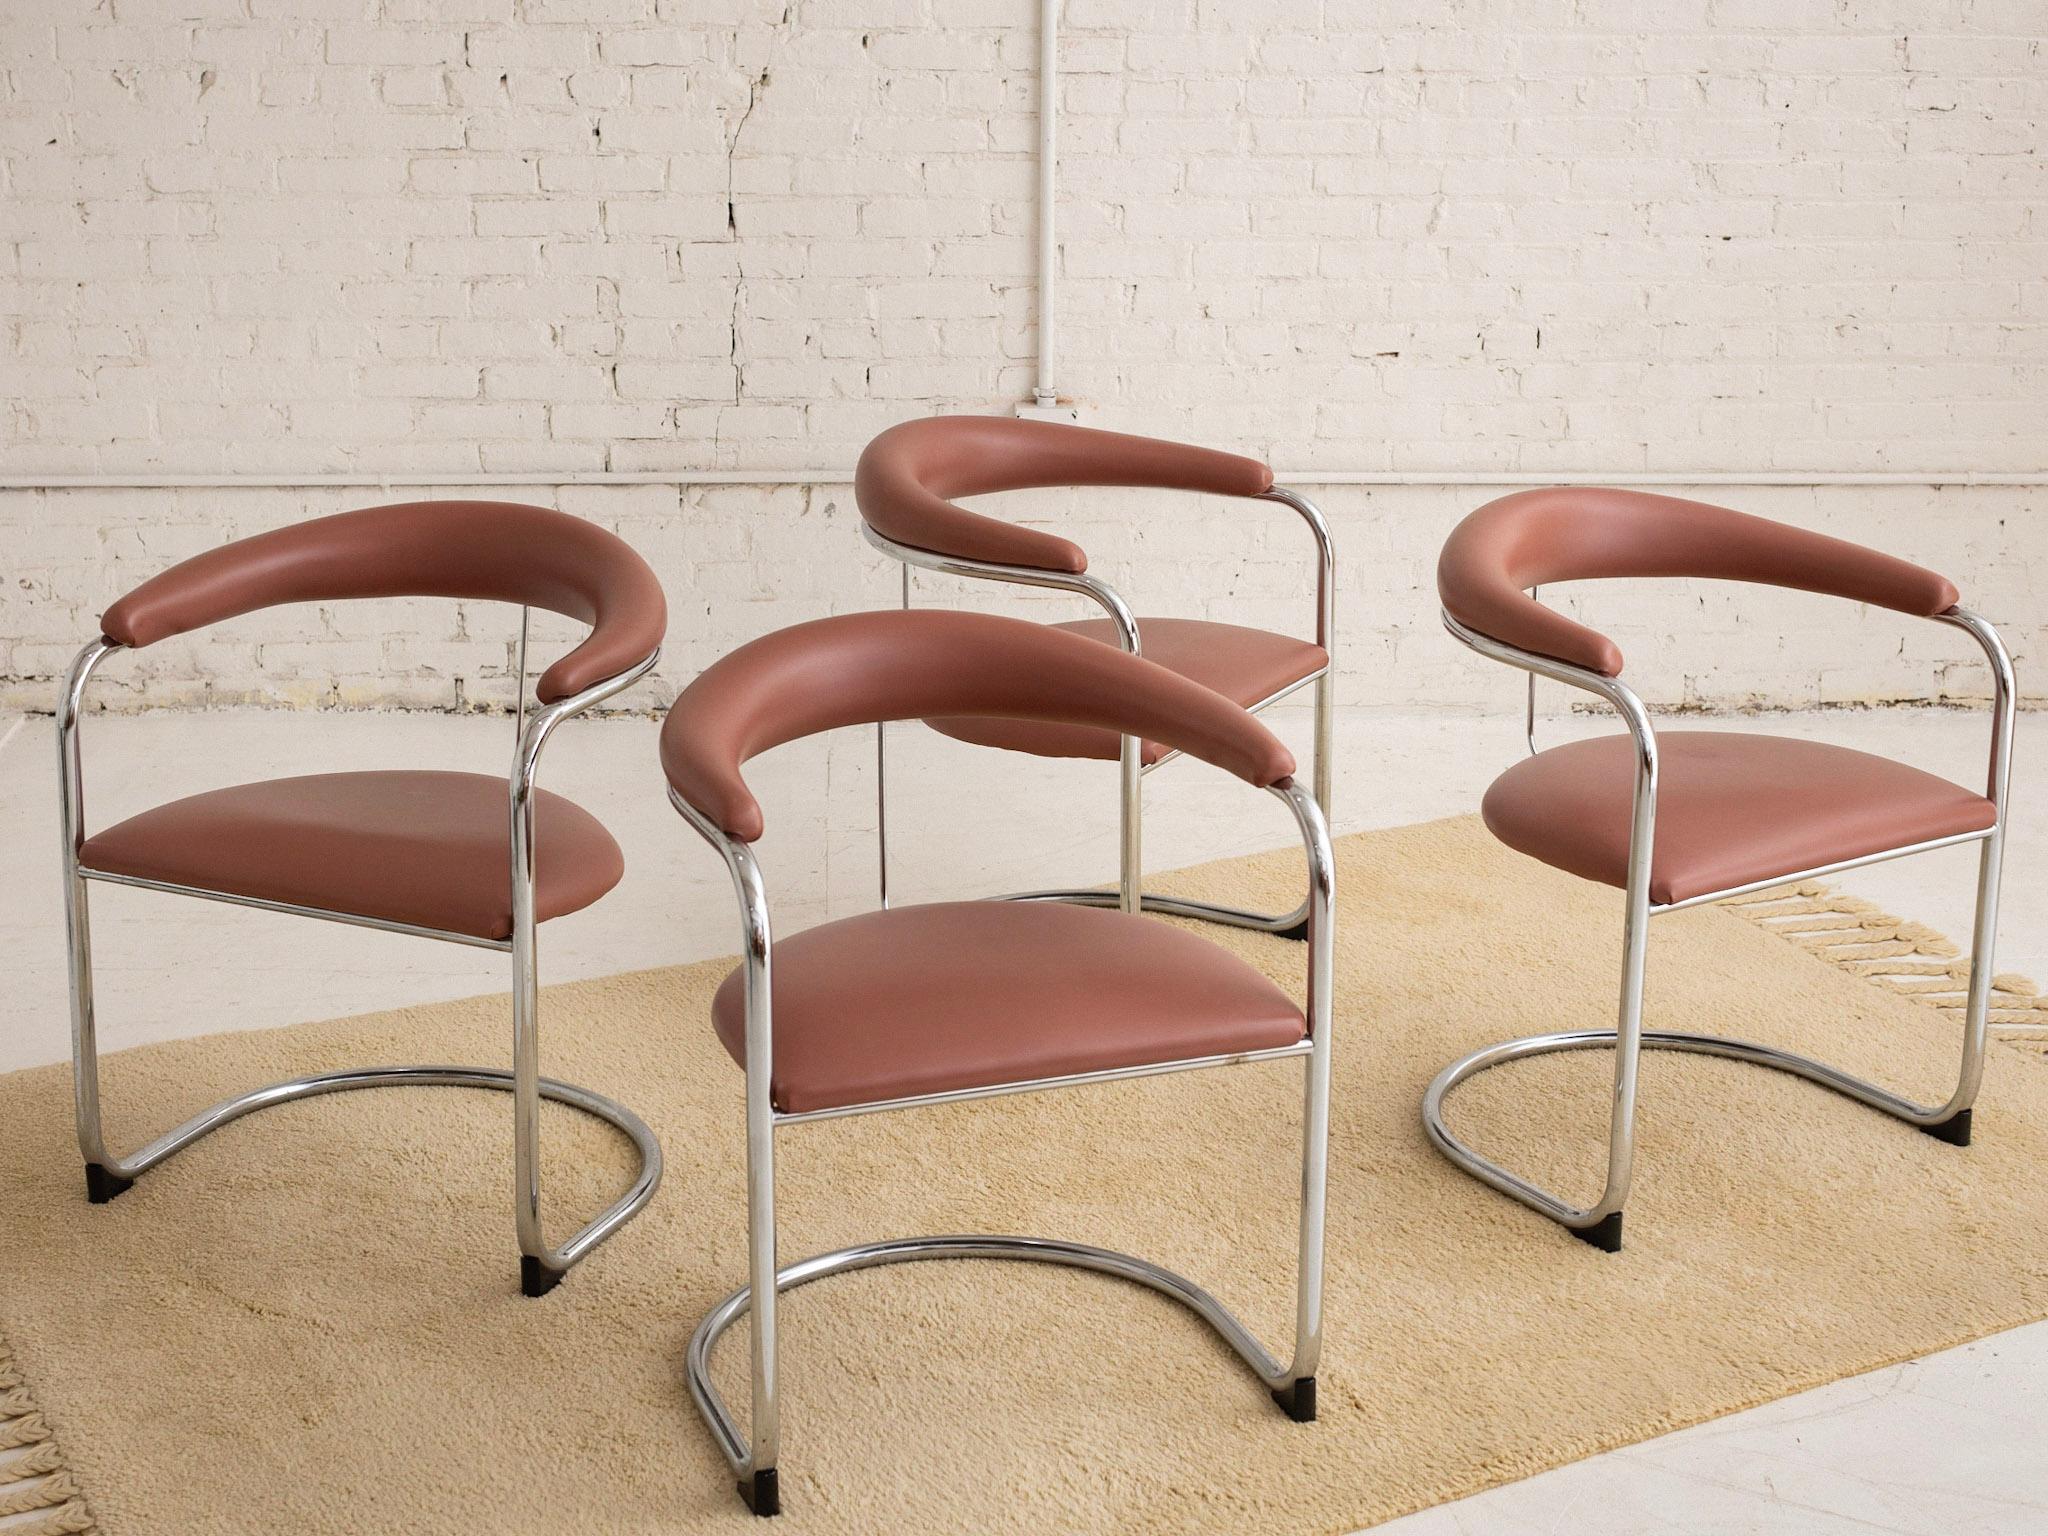 Ein Satz von 4 Sesseln, entworfen von Anton Lorenz und hergestellt von Thonet. Stahlrohrrahmen mit rosafarbenen Vinylsitzen und Rückenlehnen. Behält die Originaletiketten des Herstellers.